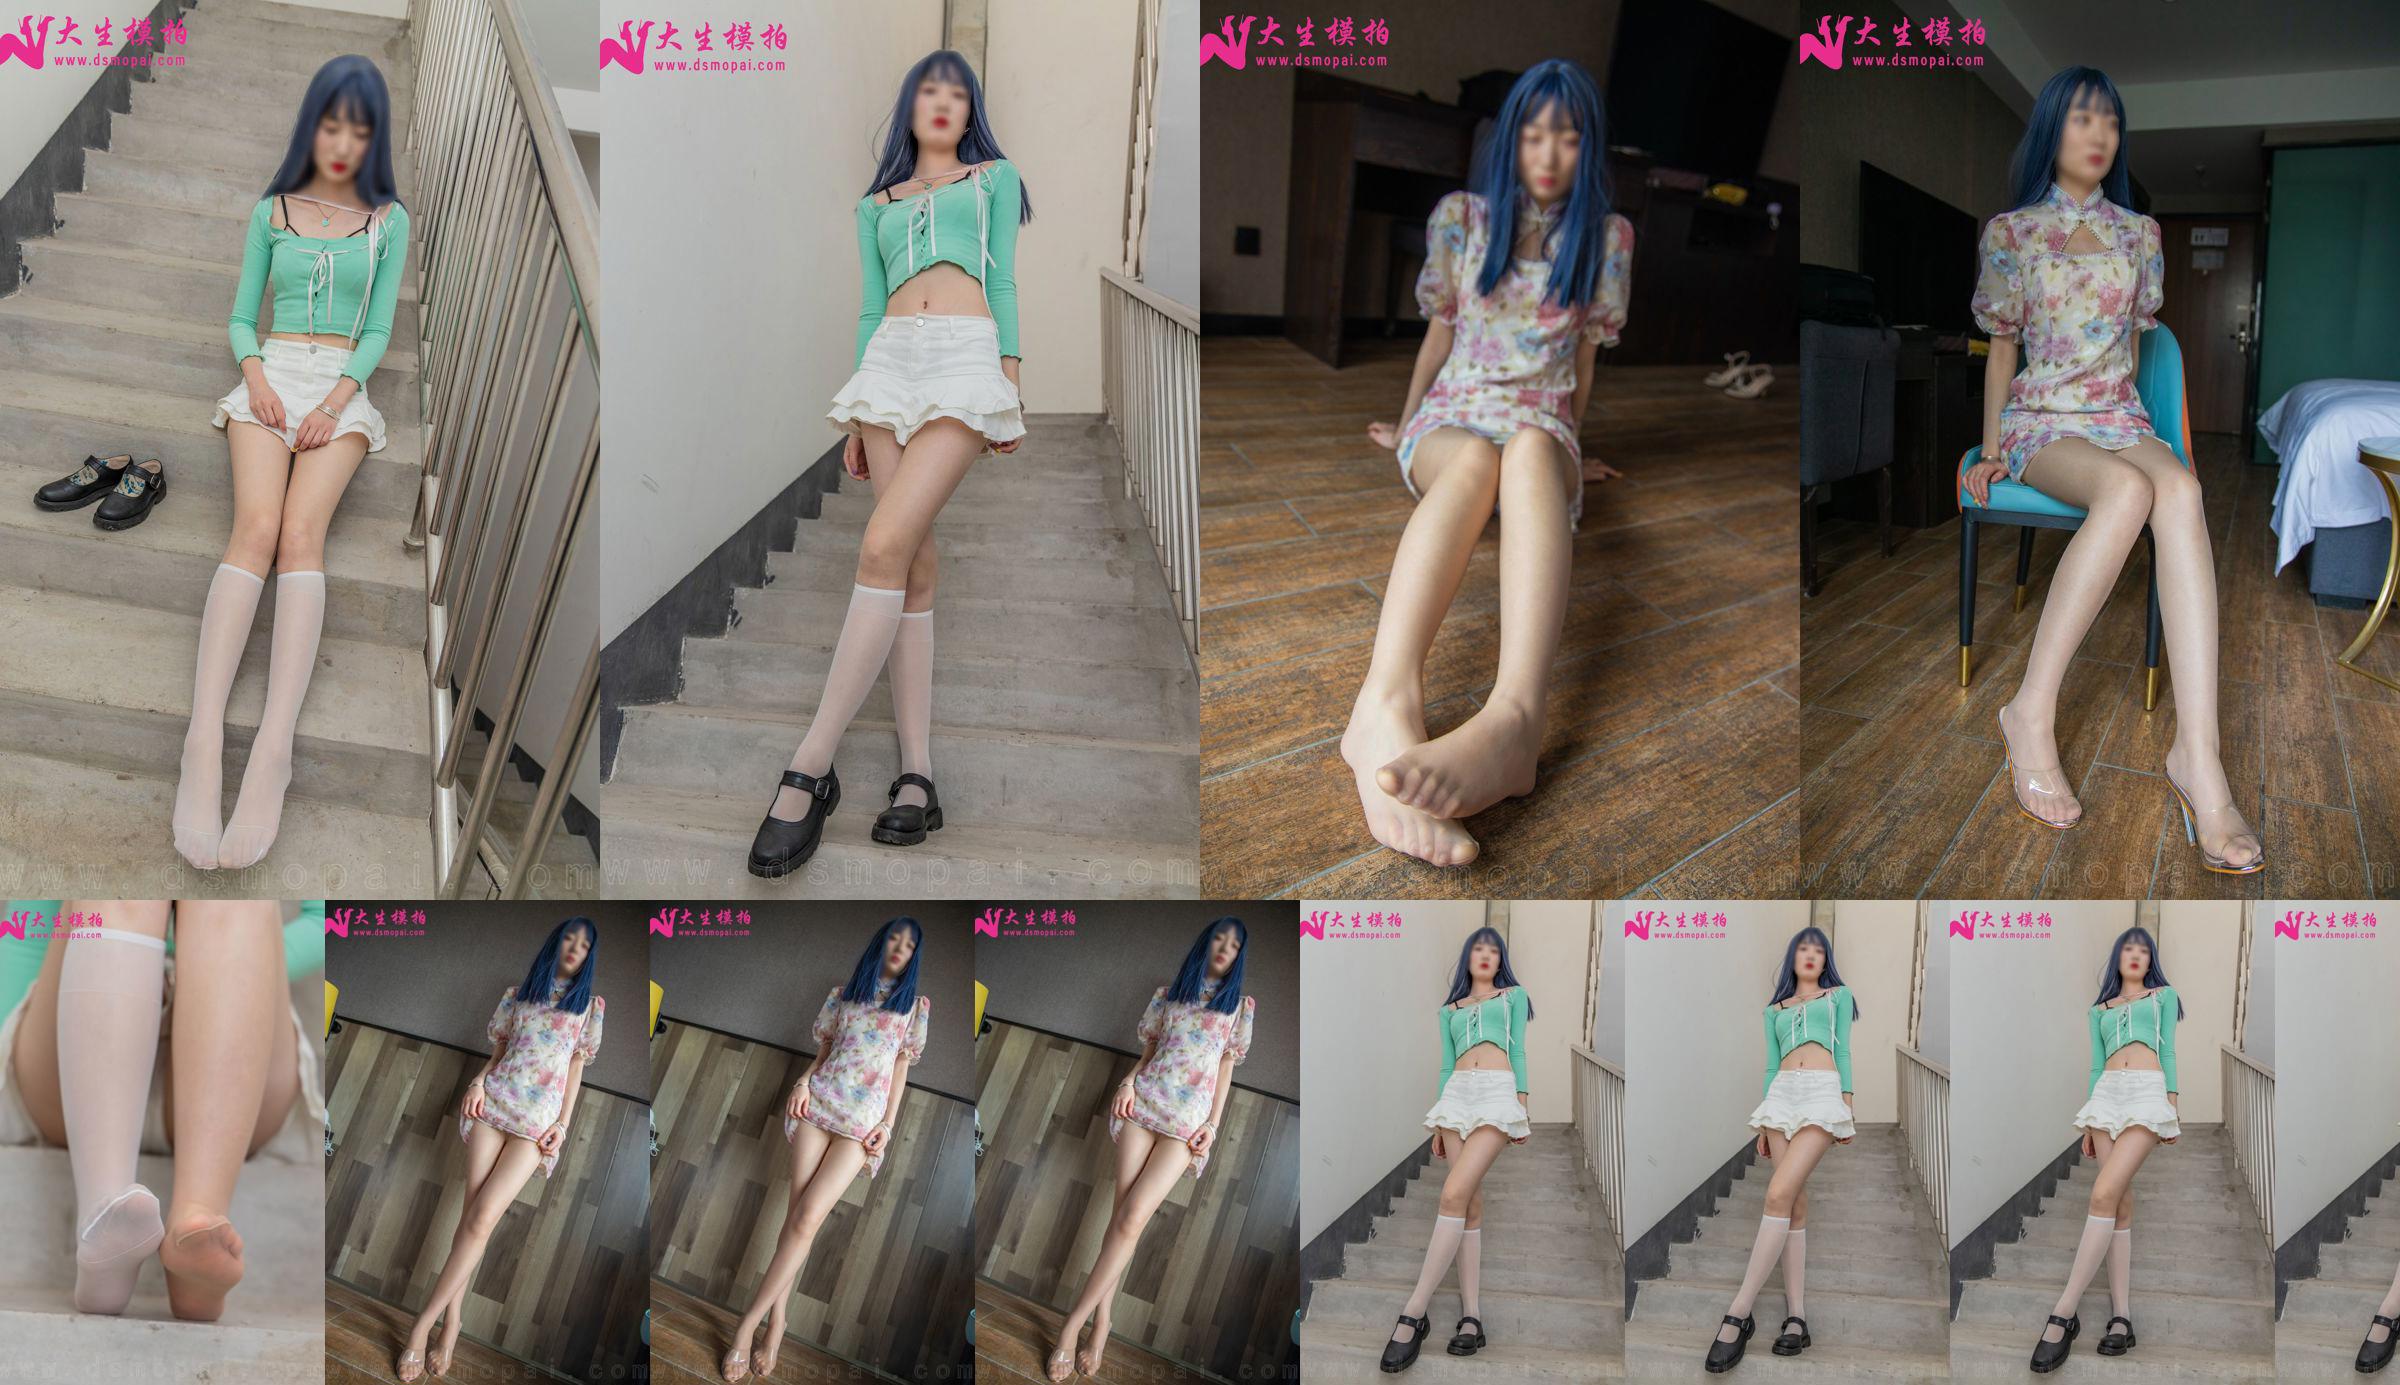 [Съемка модели Dasheng] NO.231 Lili Perfect Long Legs Photo Set No.45bc05 Страница 1